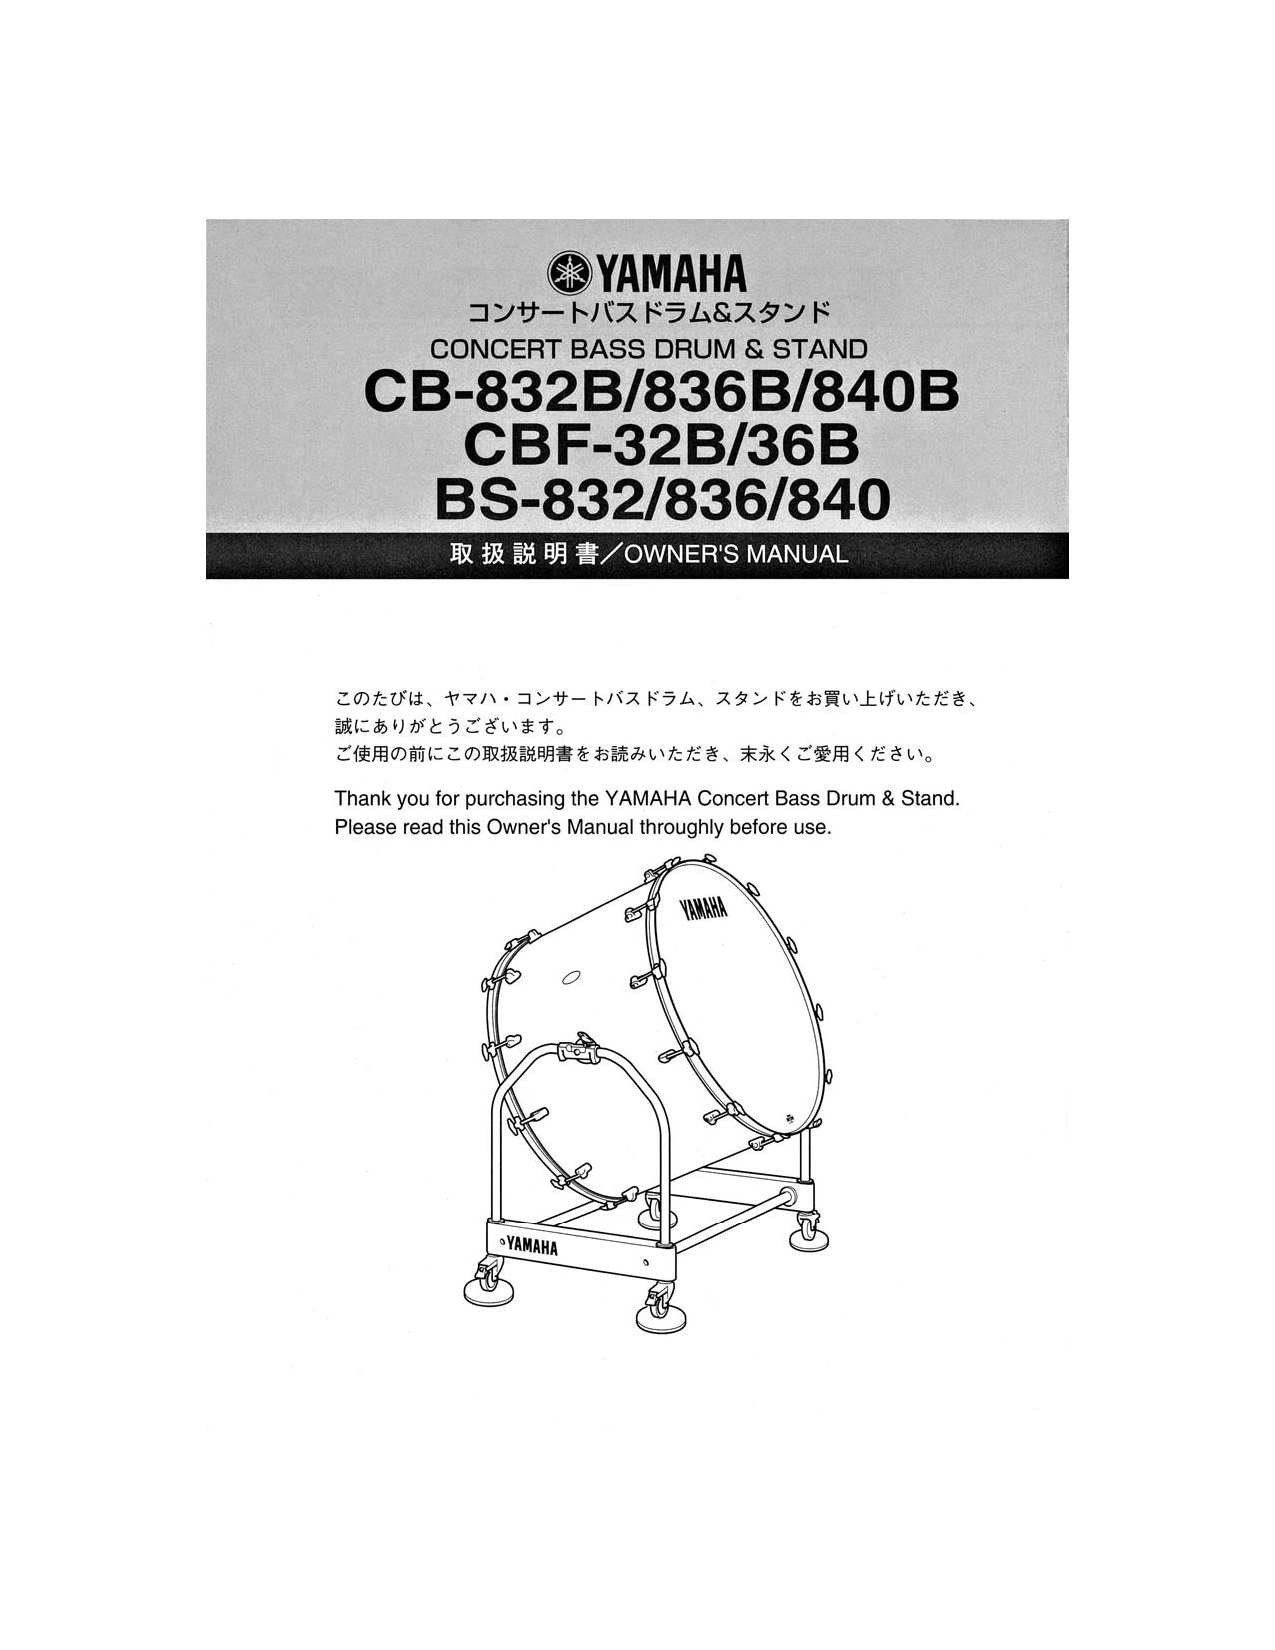 Yamaha CBF-32B-36B, BS-832-836-240, CB-832B User Manual